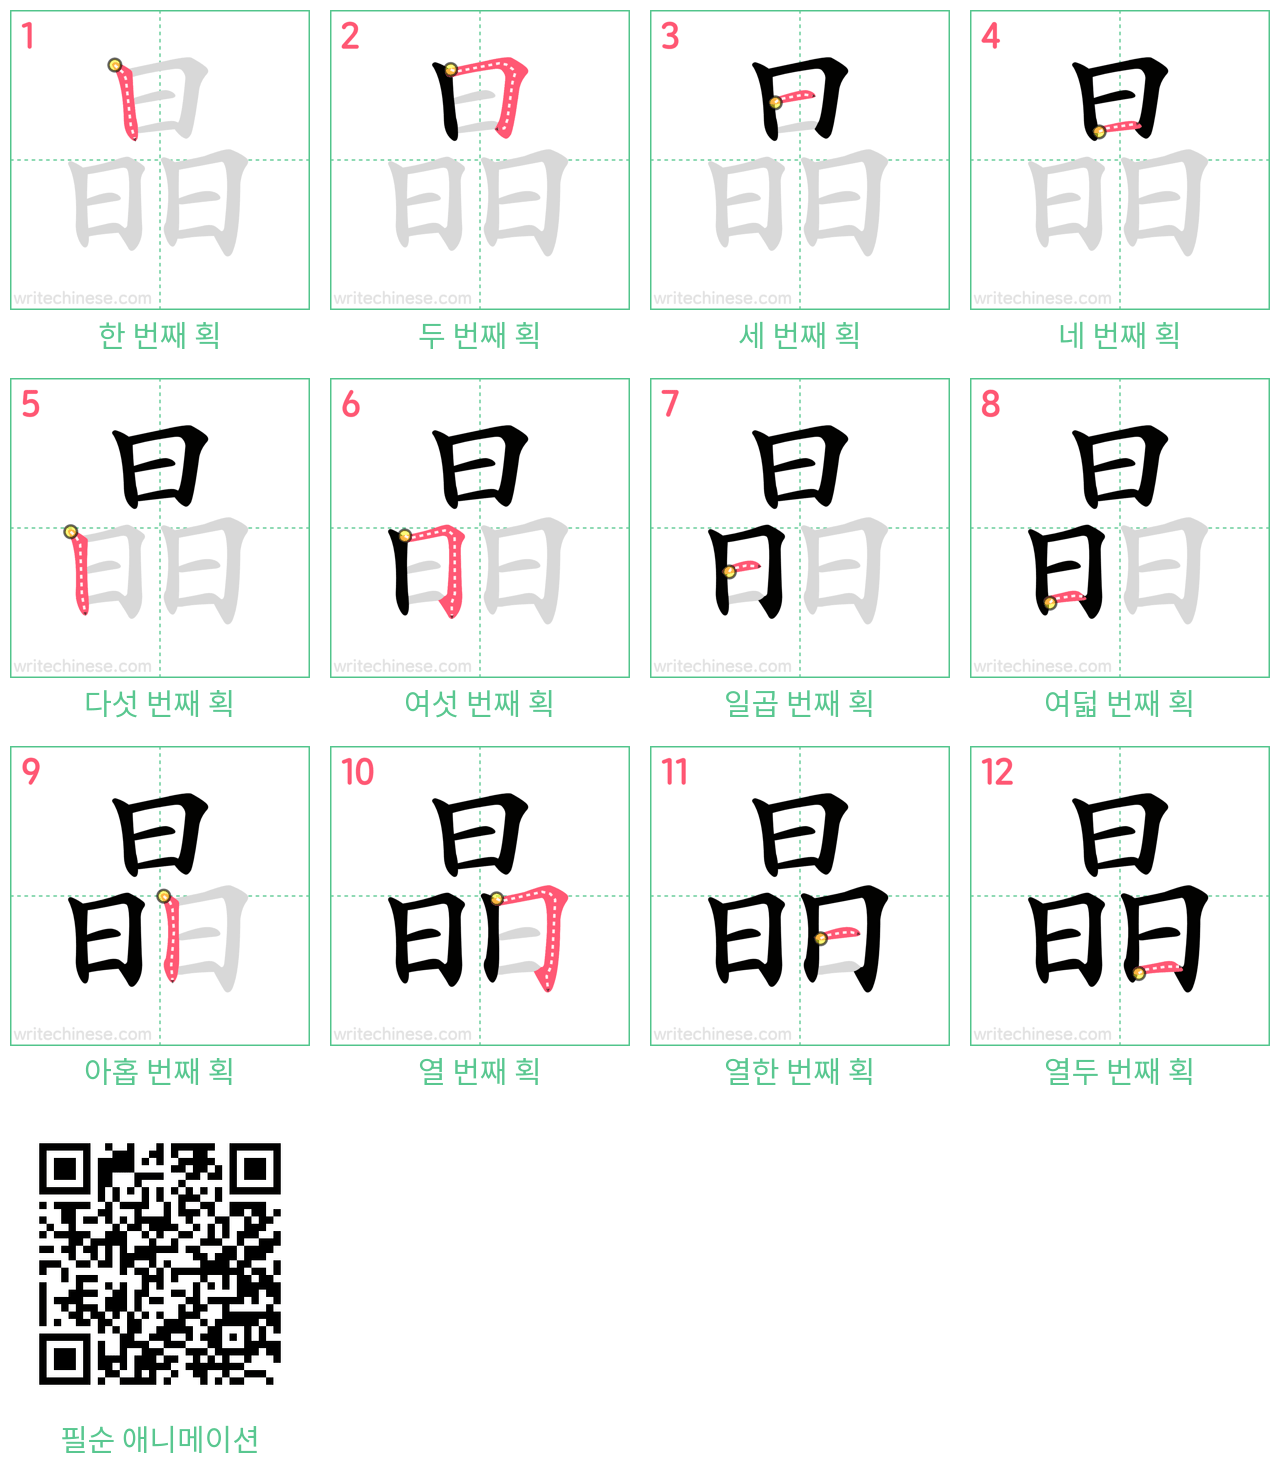 晶 step-by-step stroke order diagrams